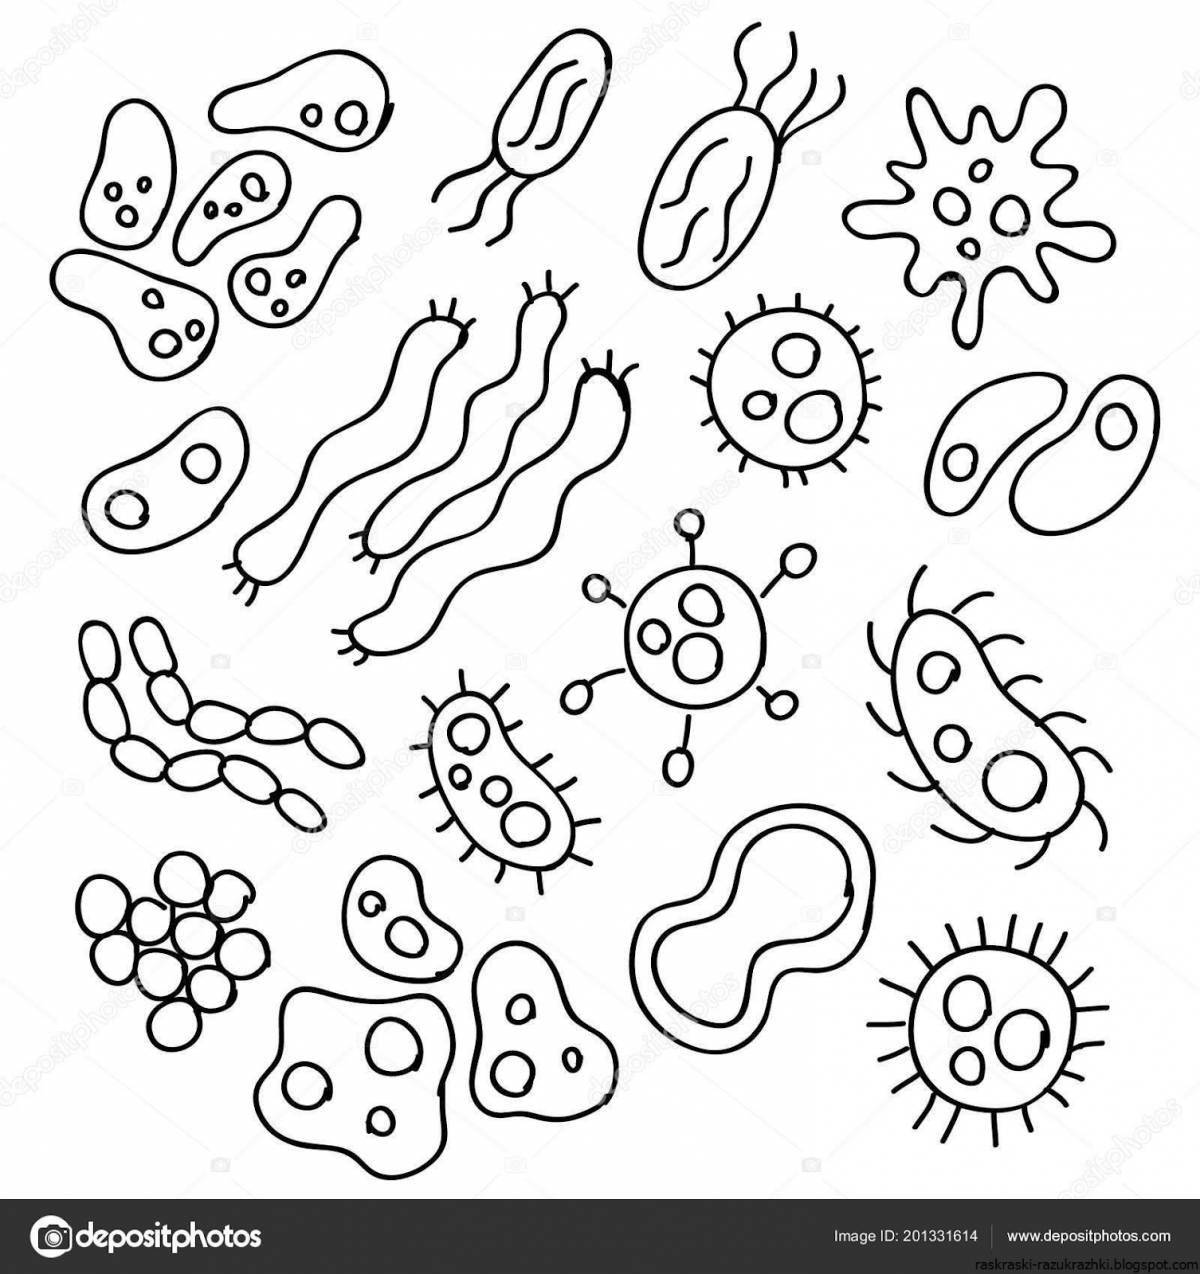 Coloring book humorous bacteria